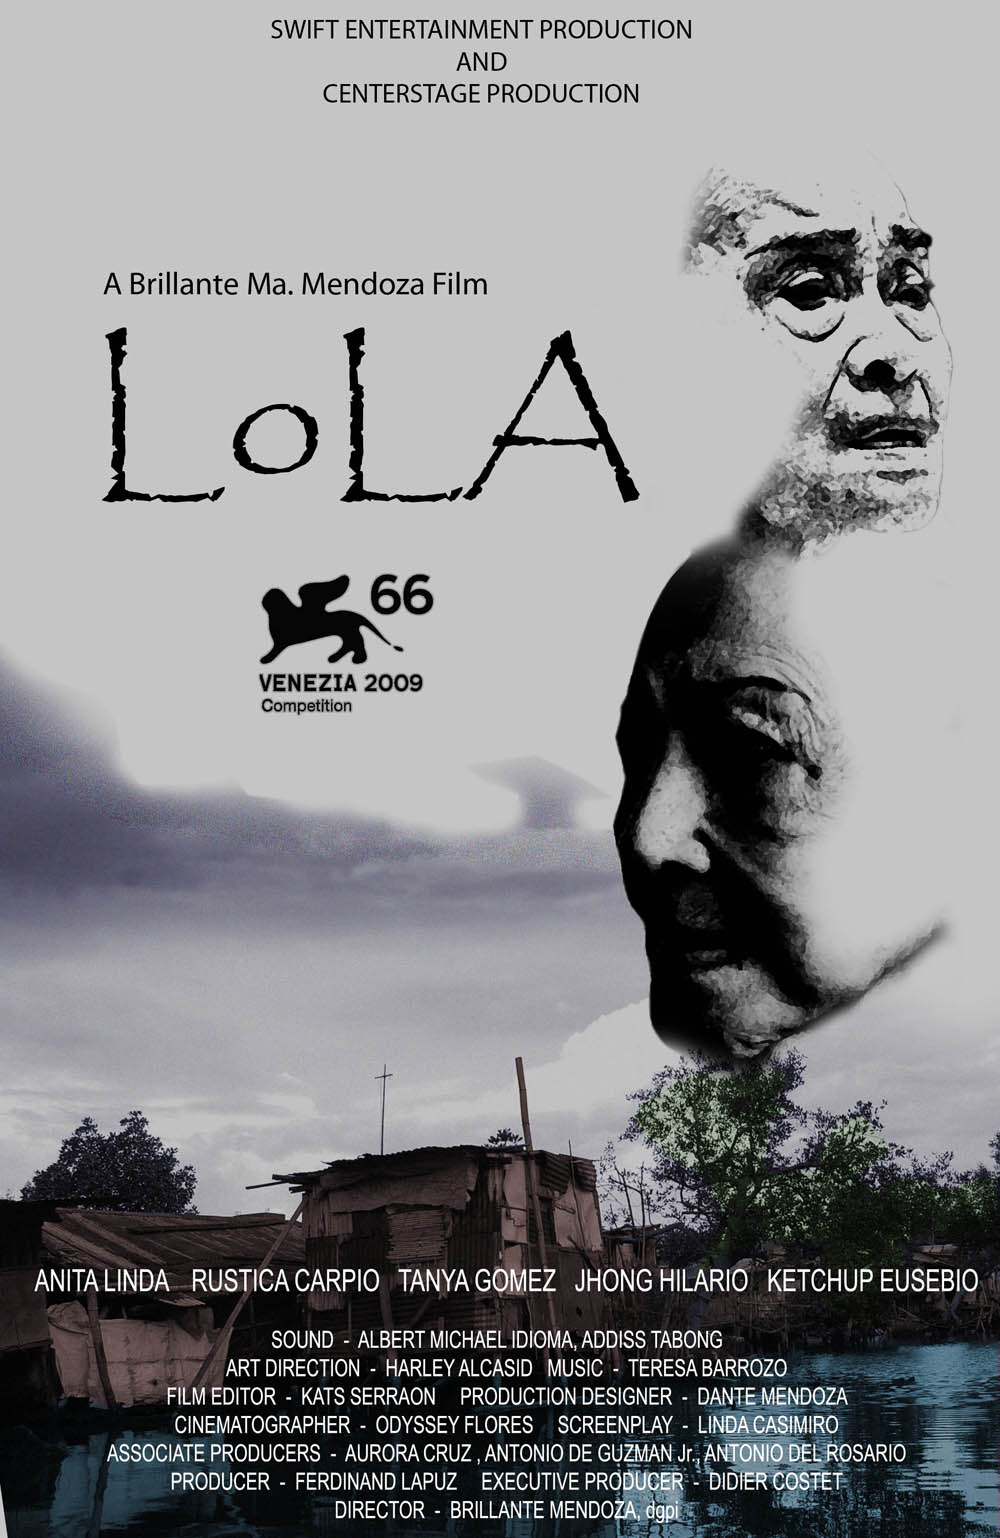 洛拉(法國、菲律賓2009年布里蘭特·曼多薩執導電影)